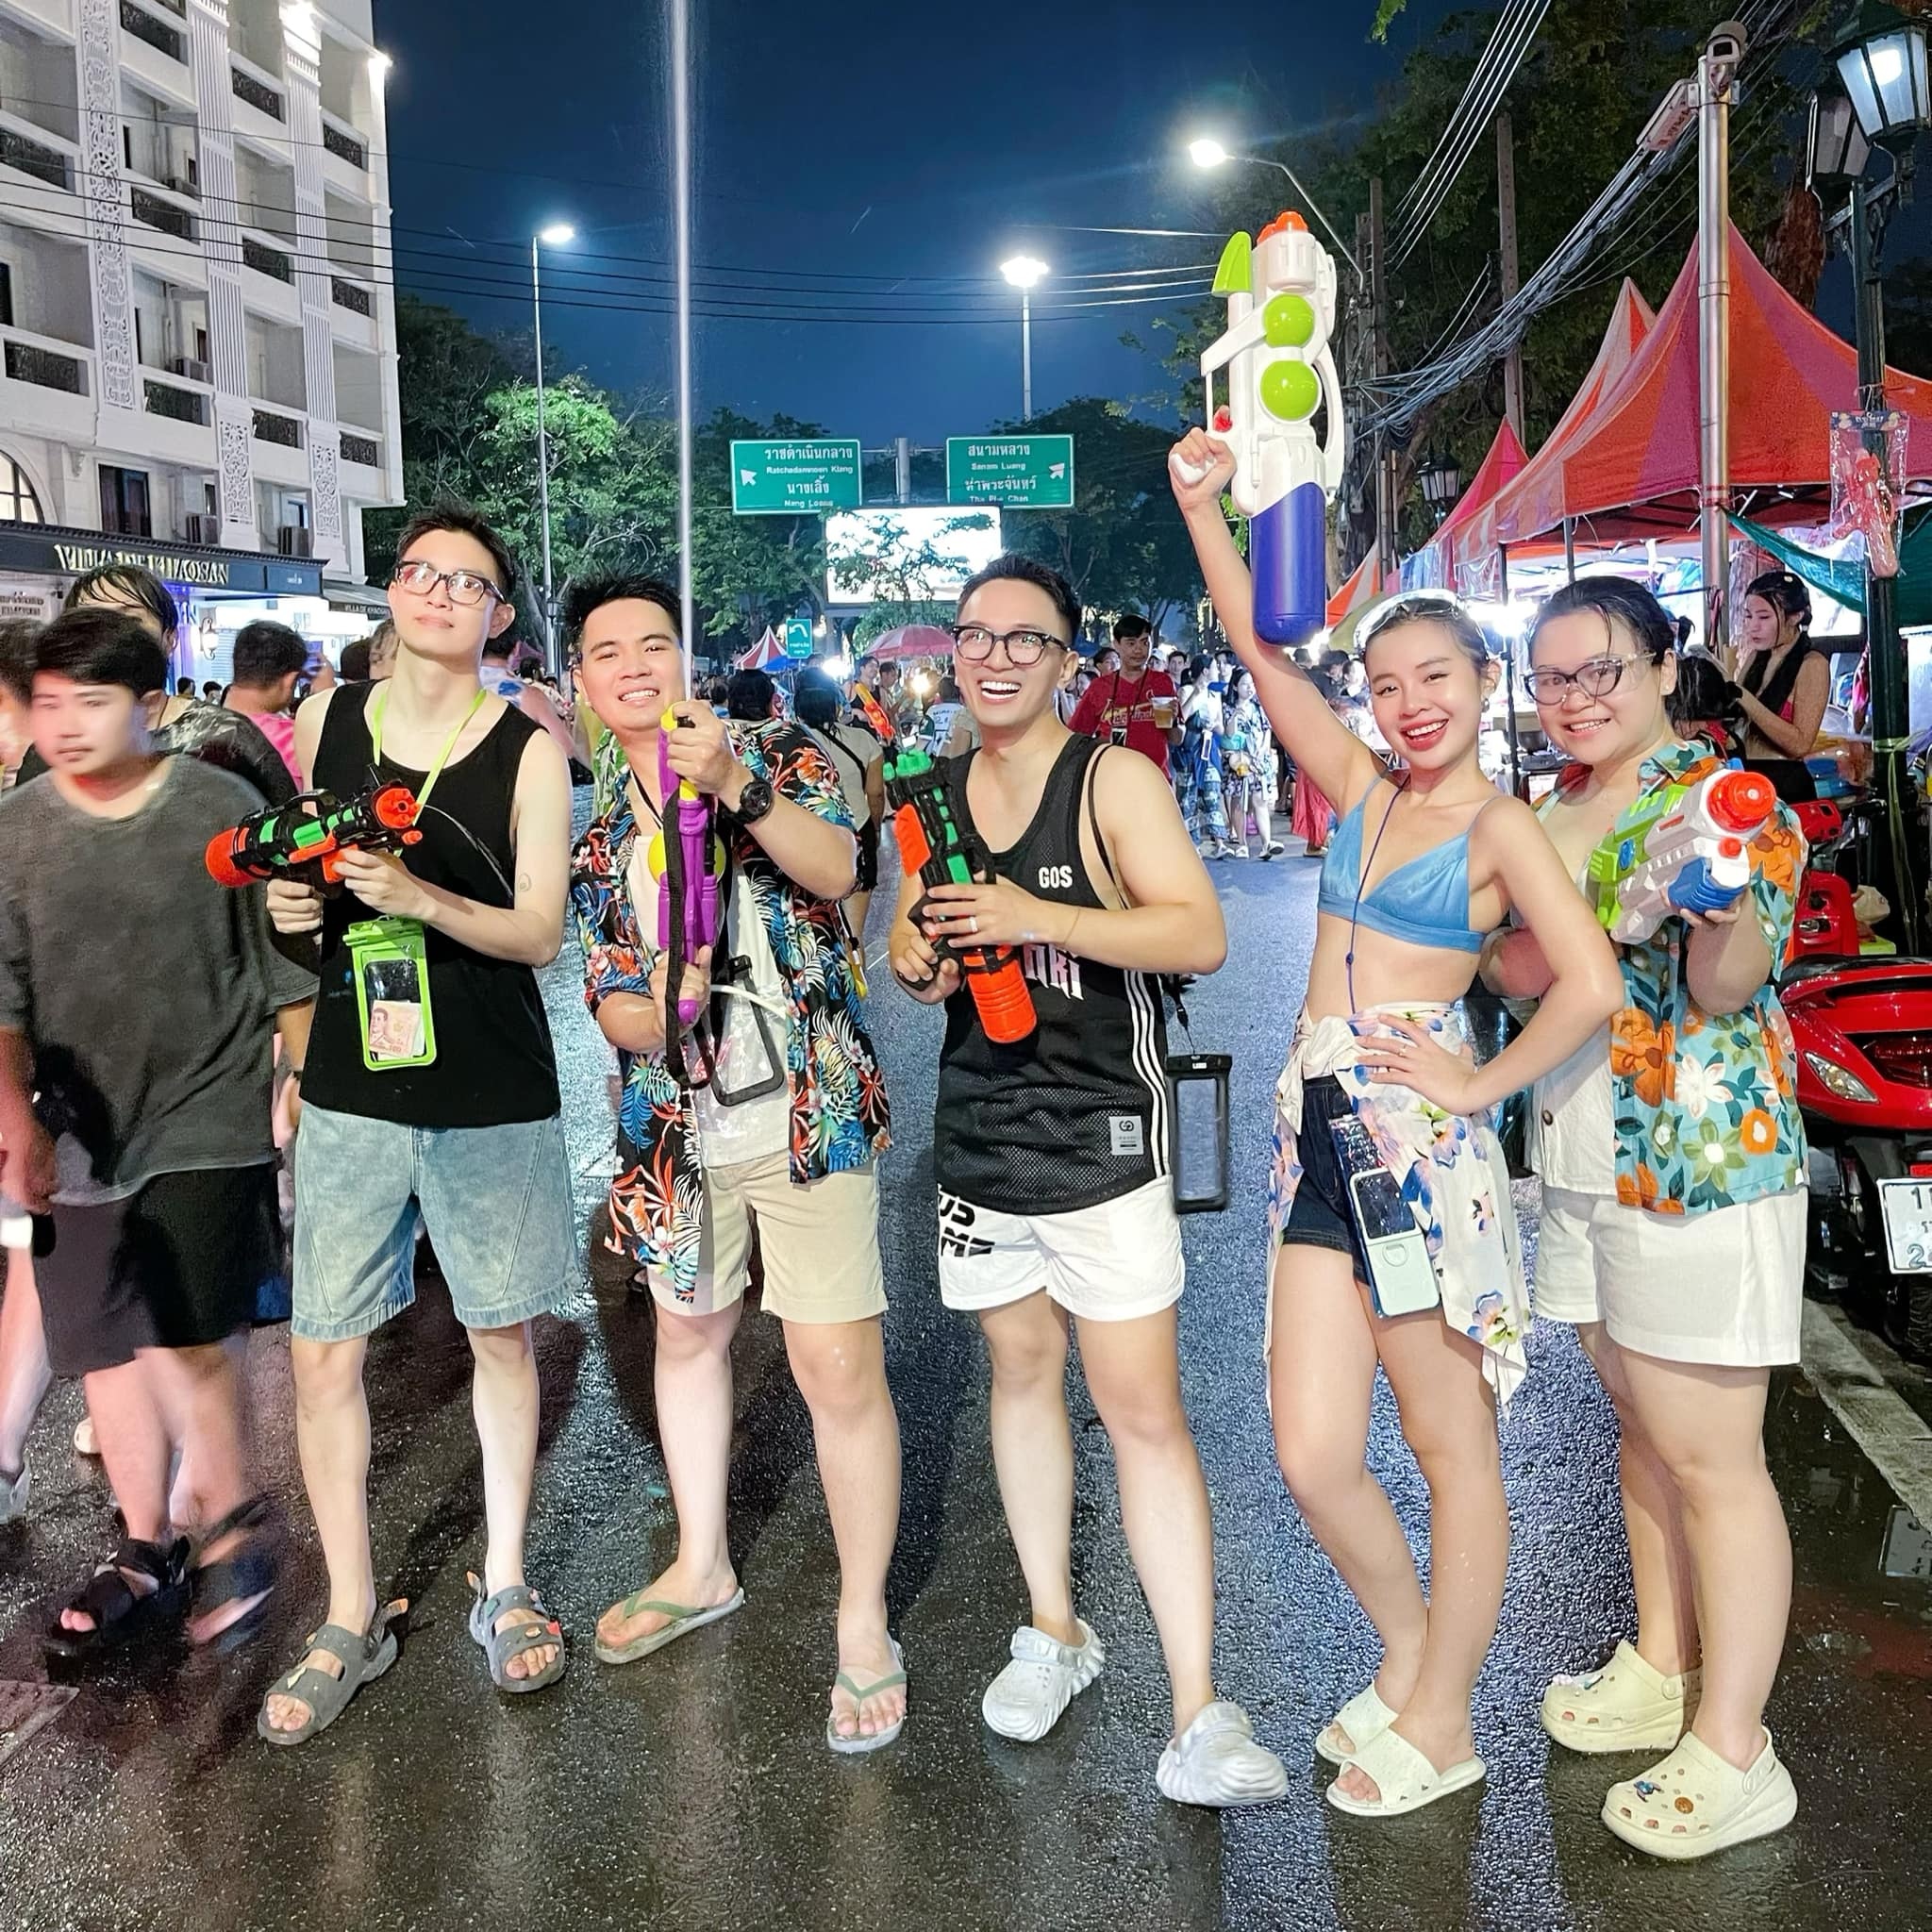 Huy cùng nhóm bạn háo hức hòa mình vào mùa lễ hội té nước sôi động ở Bangkok (Ảnh: Nhân vật cung cấp).